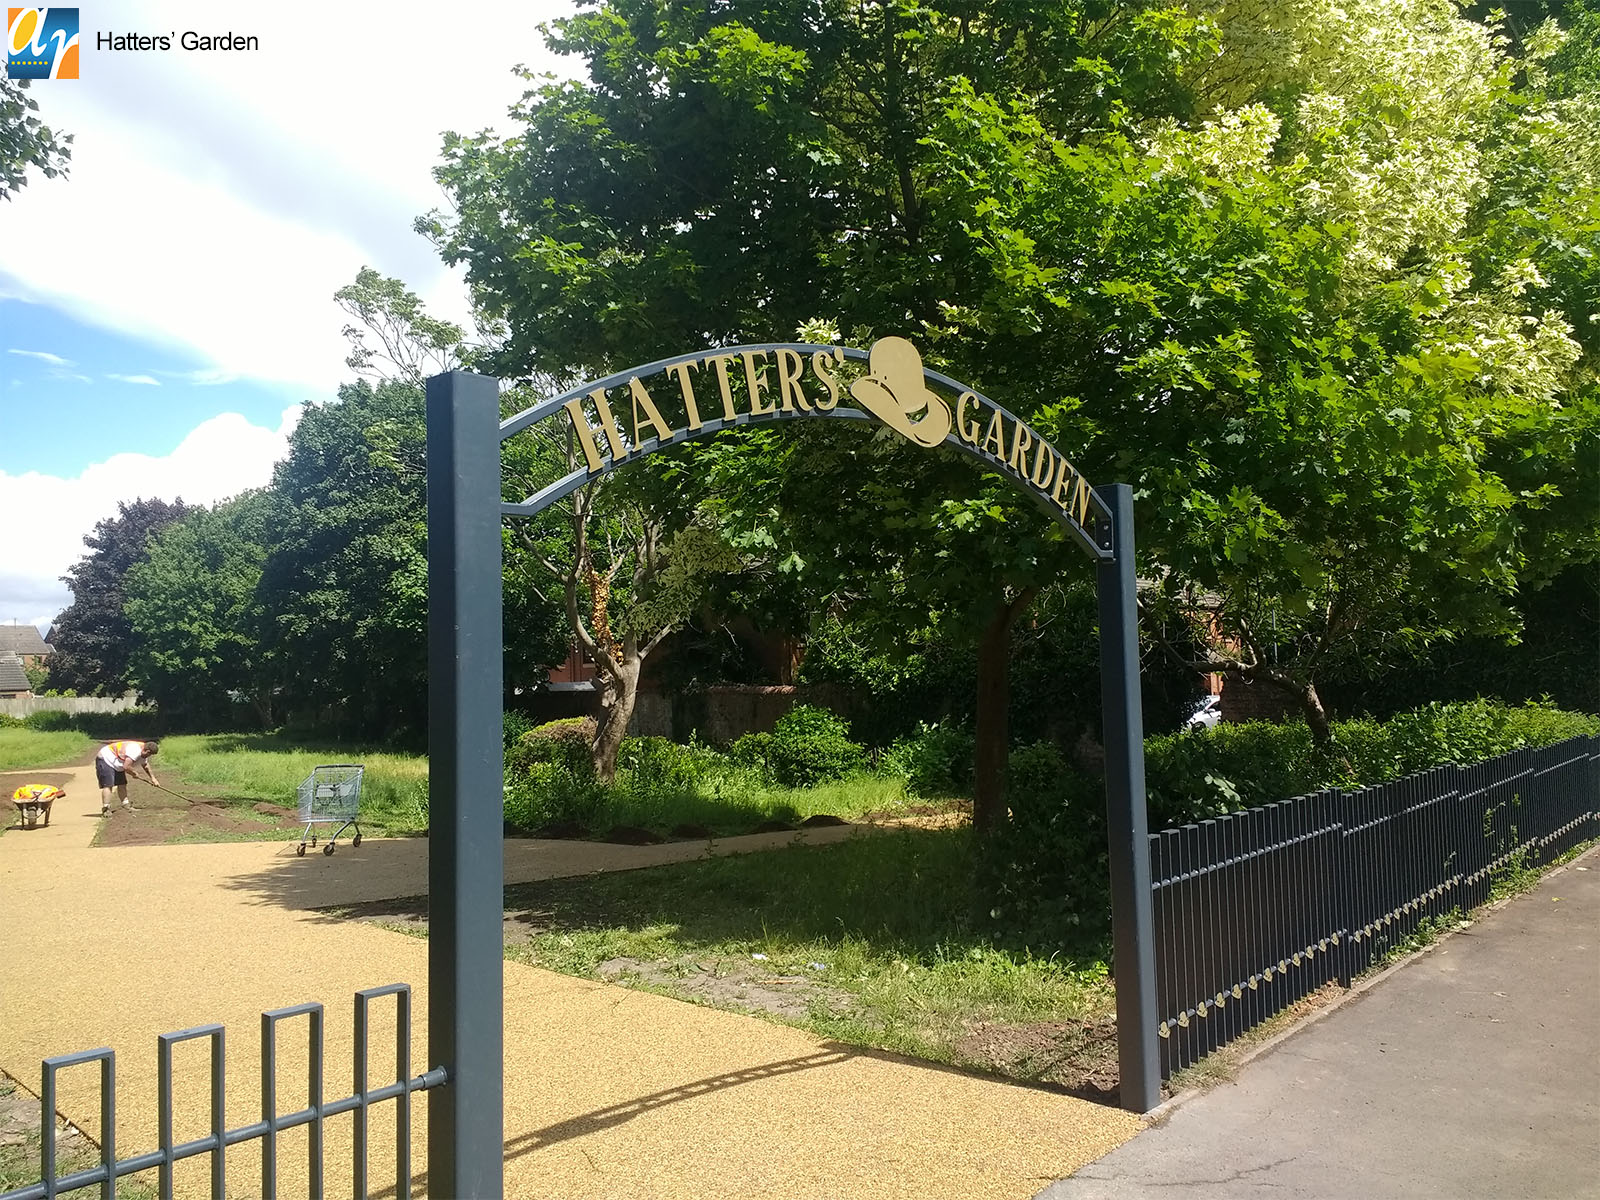 Hatters' Garden Decorative Archway